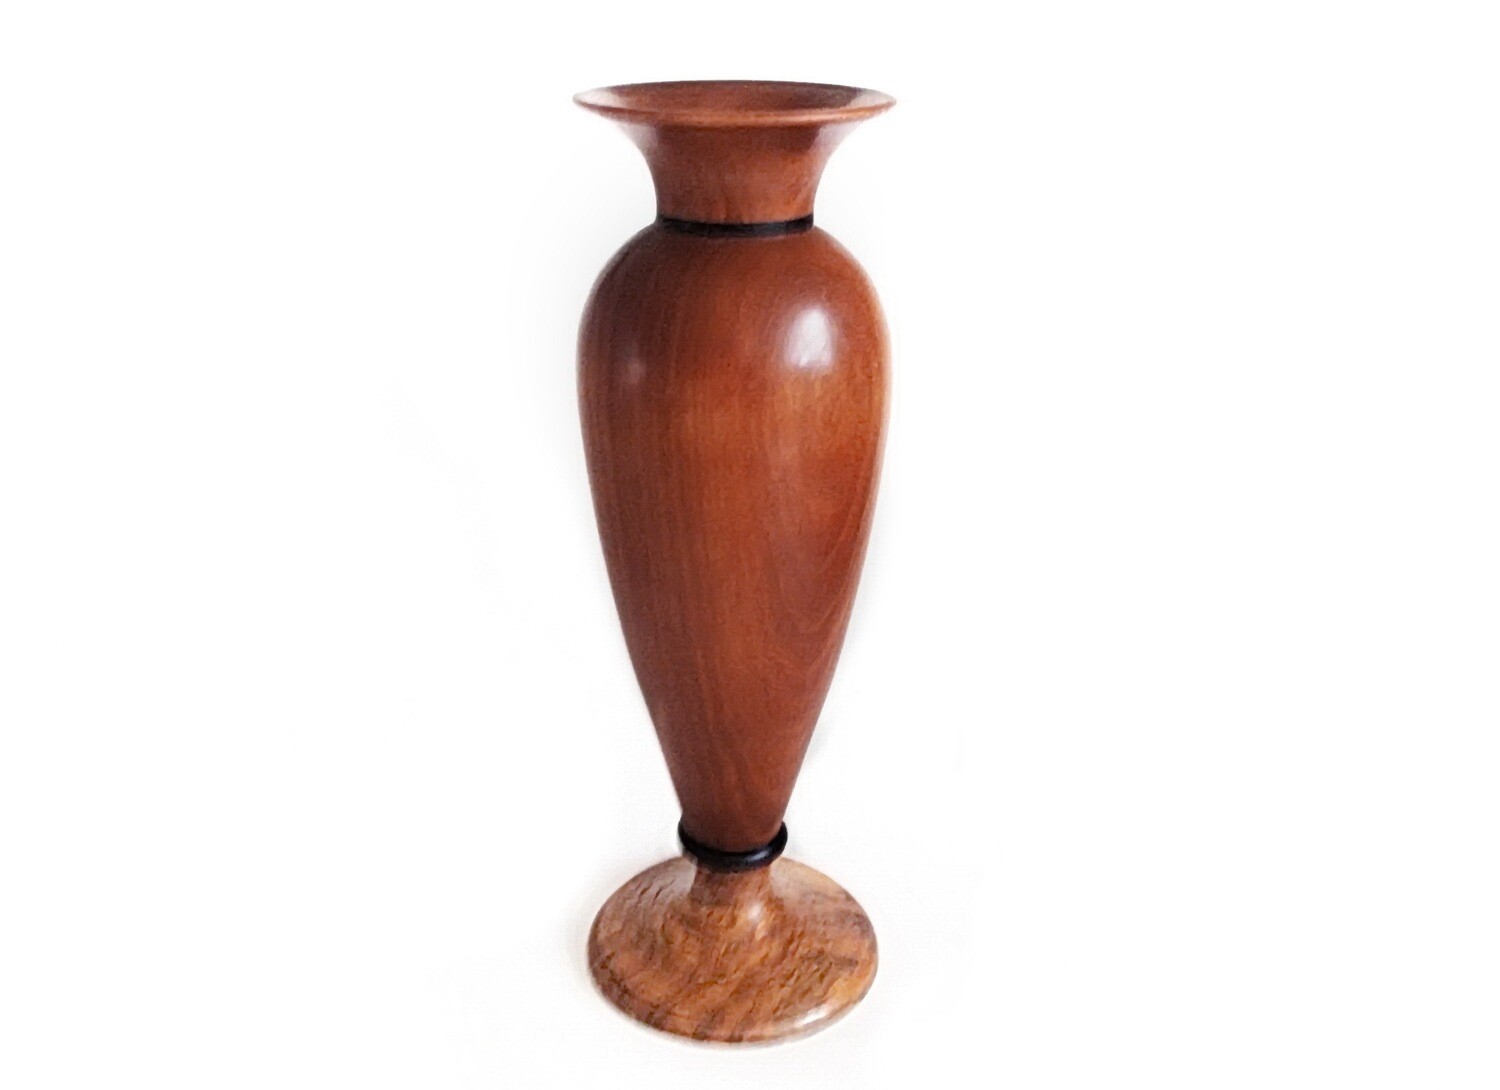 Teak, Burled and Ebony Wood Vase